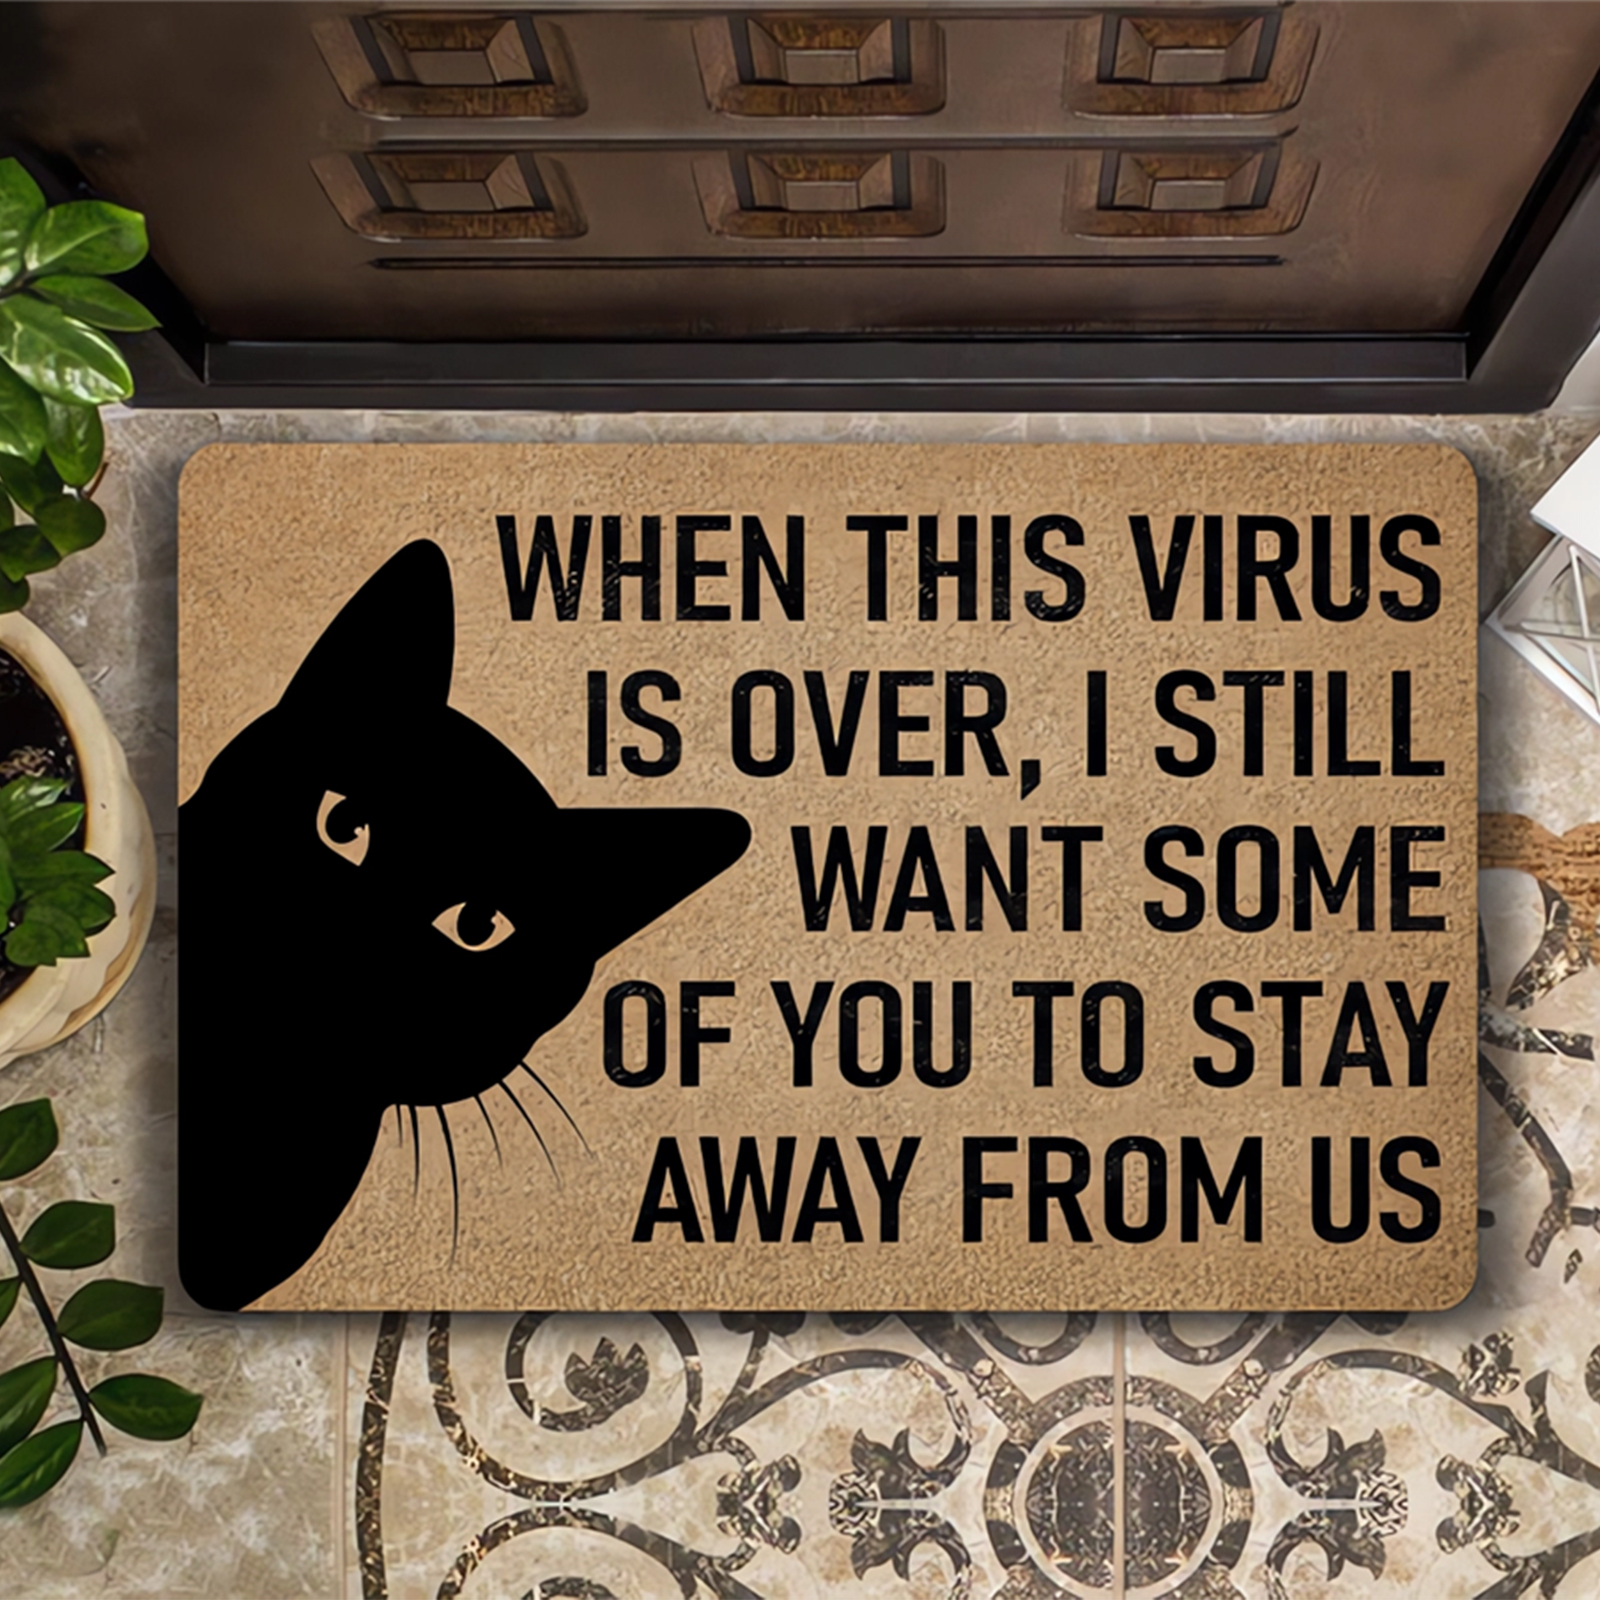 Cloocl Entrant Doormat猫を歓迎する人々の容認された印刷されたフランネルポリエステルラグホーム装飾キッチンベッドルームマット